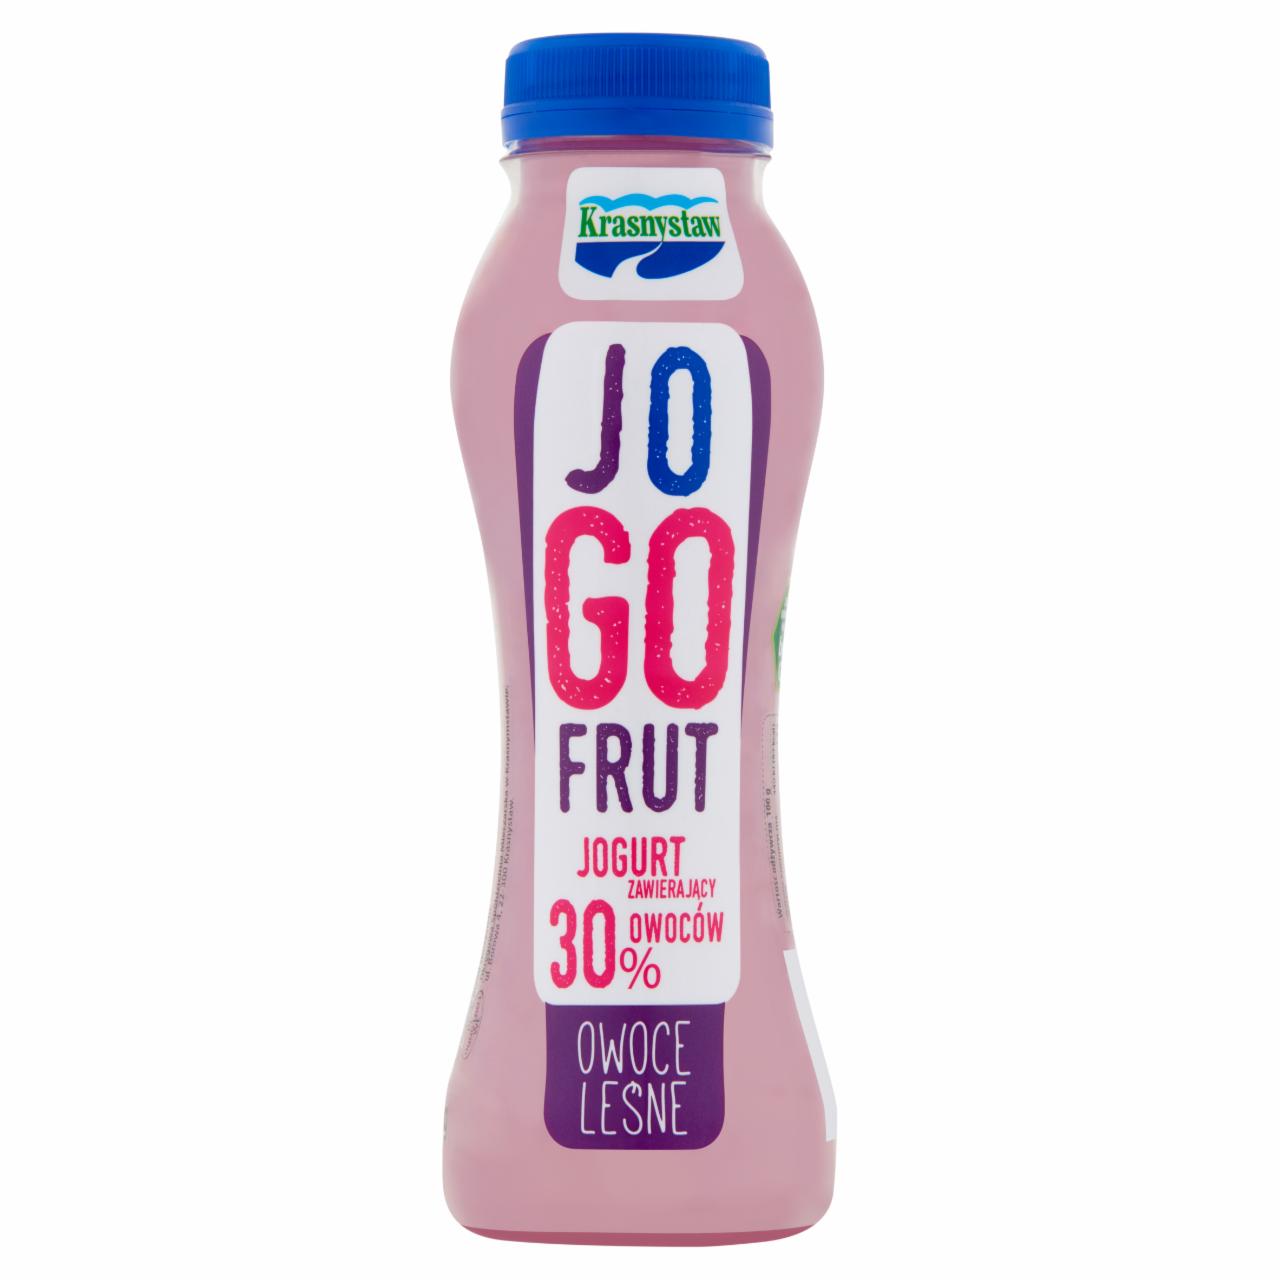 Zdjęcia - Krasnystaw Jogofrut Jogurt owoce leśne 250 g